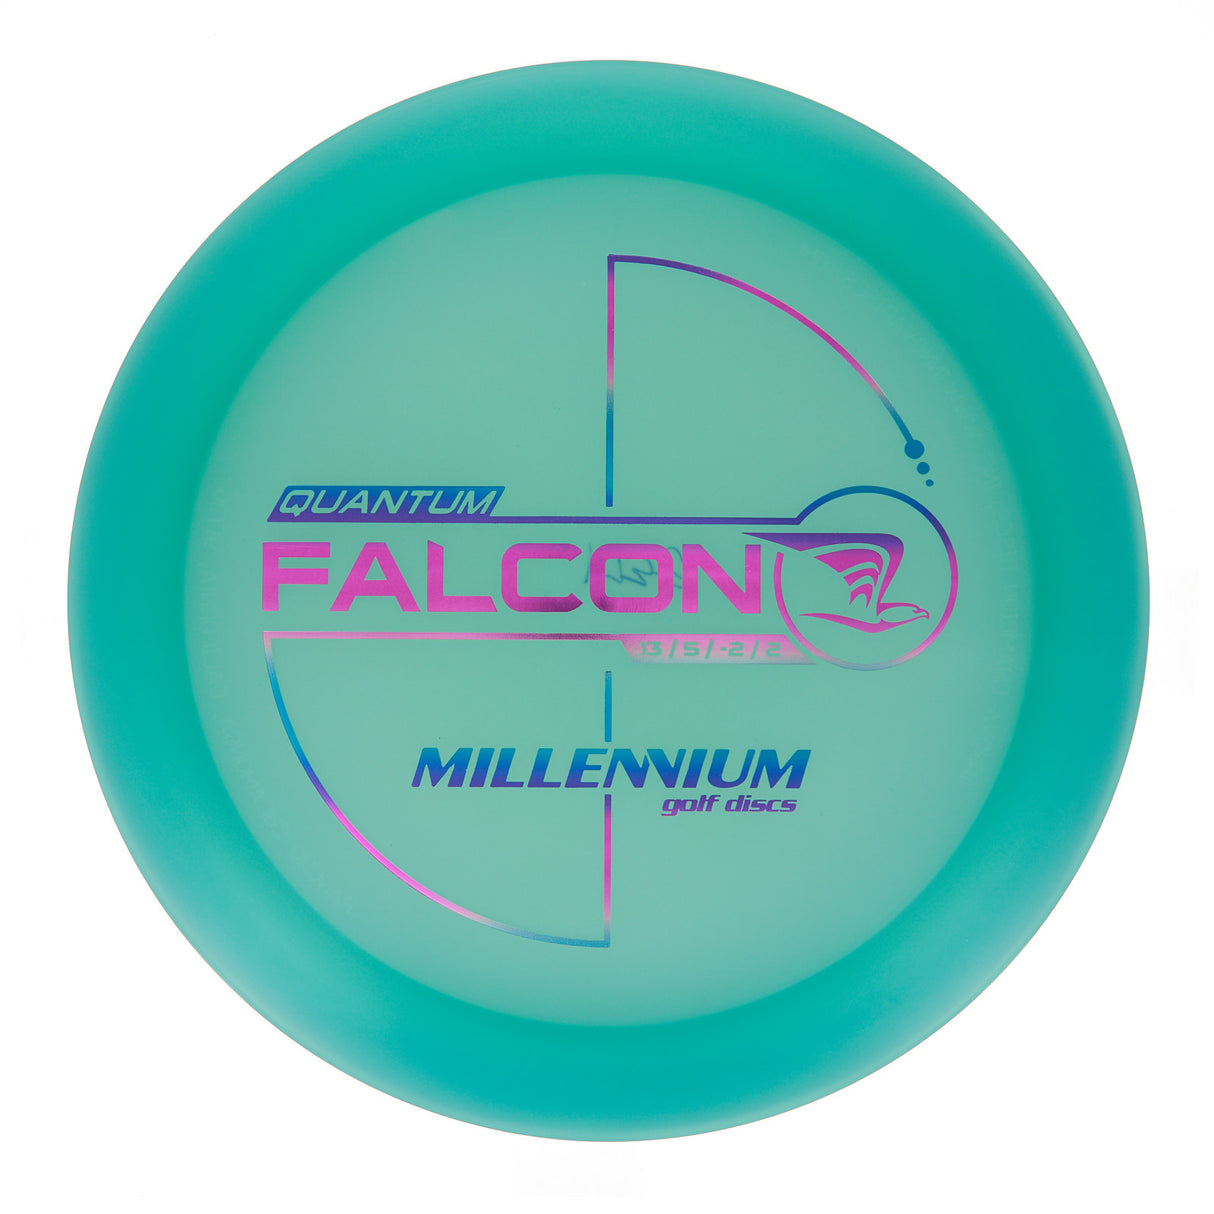 Millennium Falcon - Quantum 177g | Style 0001